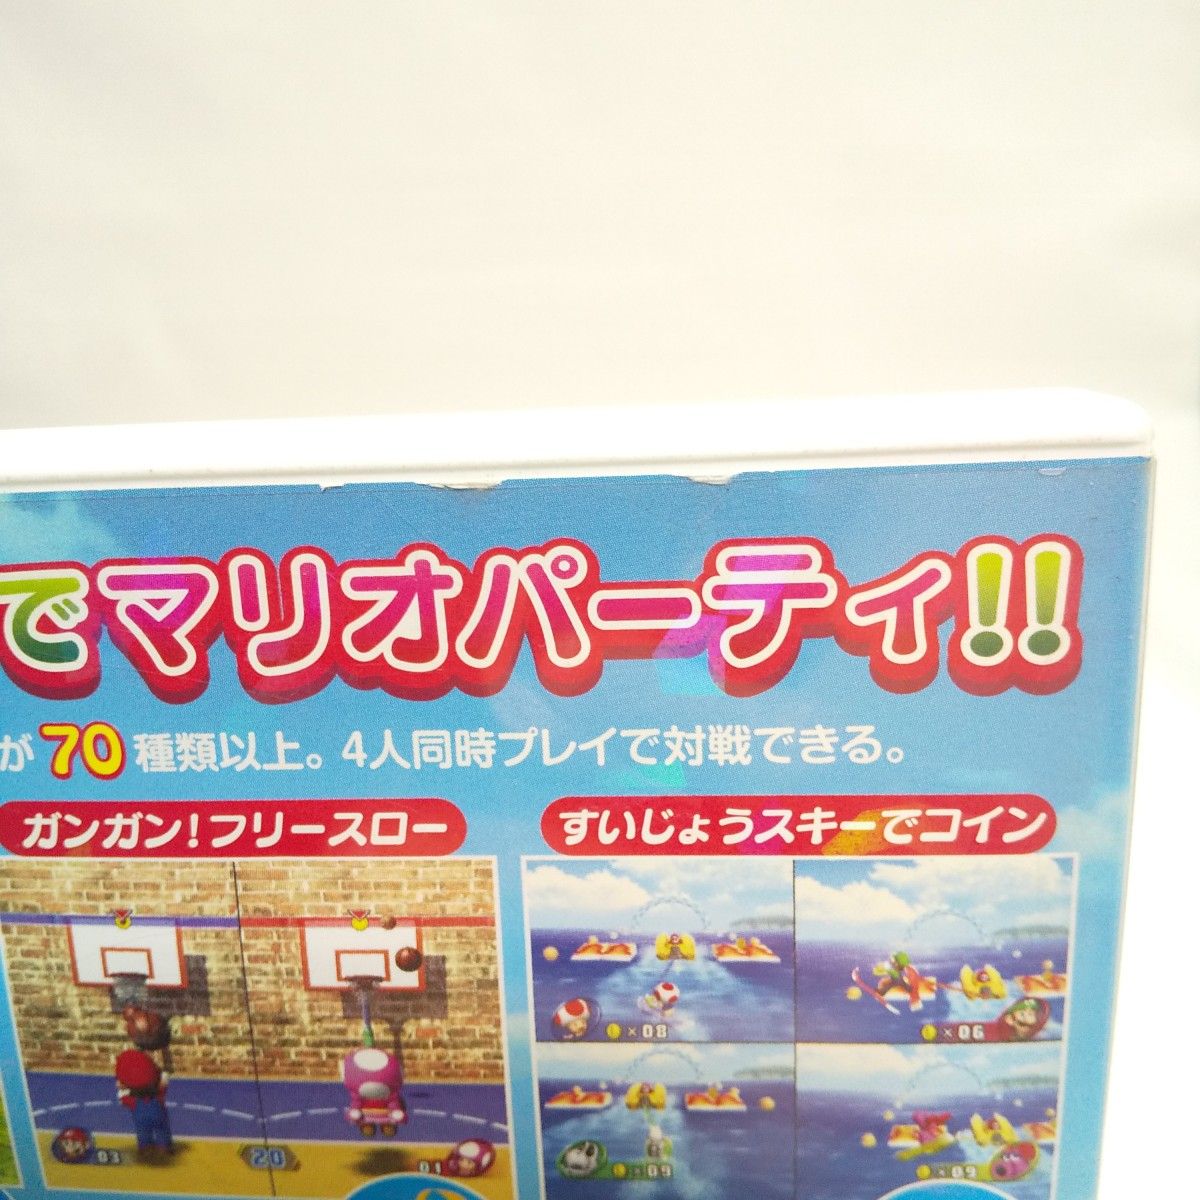 Wii ゲームソフト 任天堂 マリオパーティー8